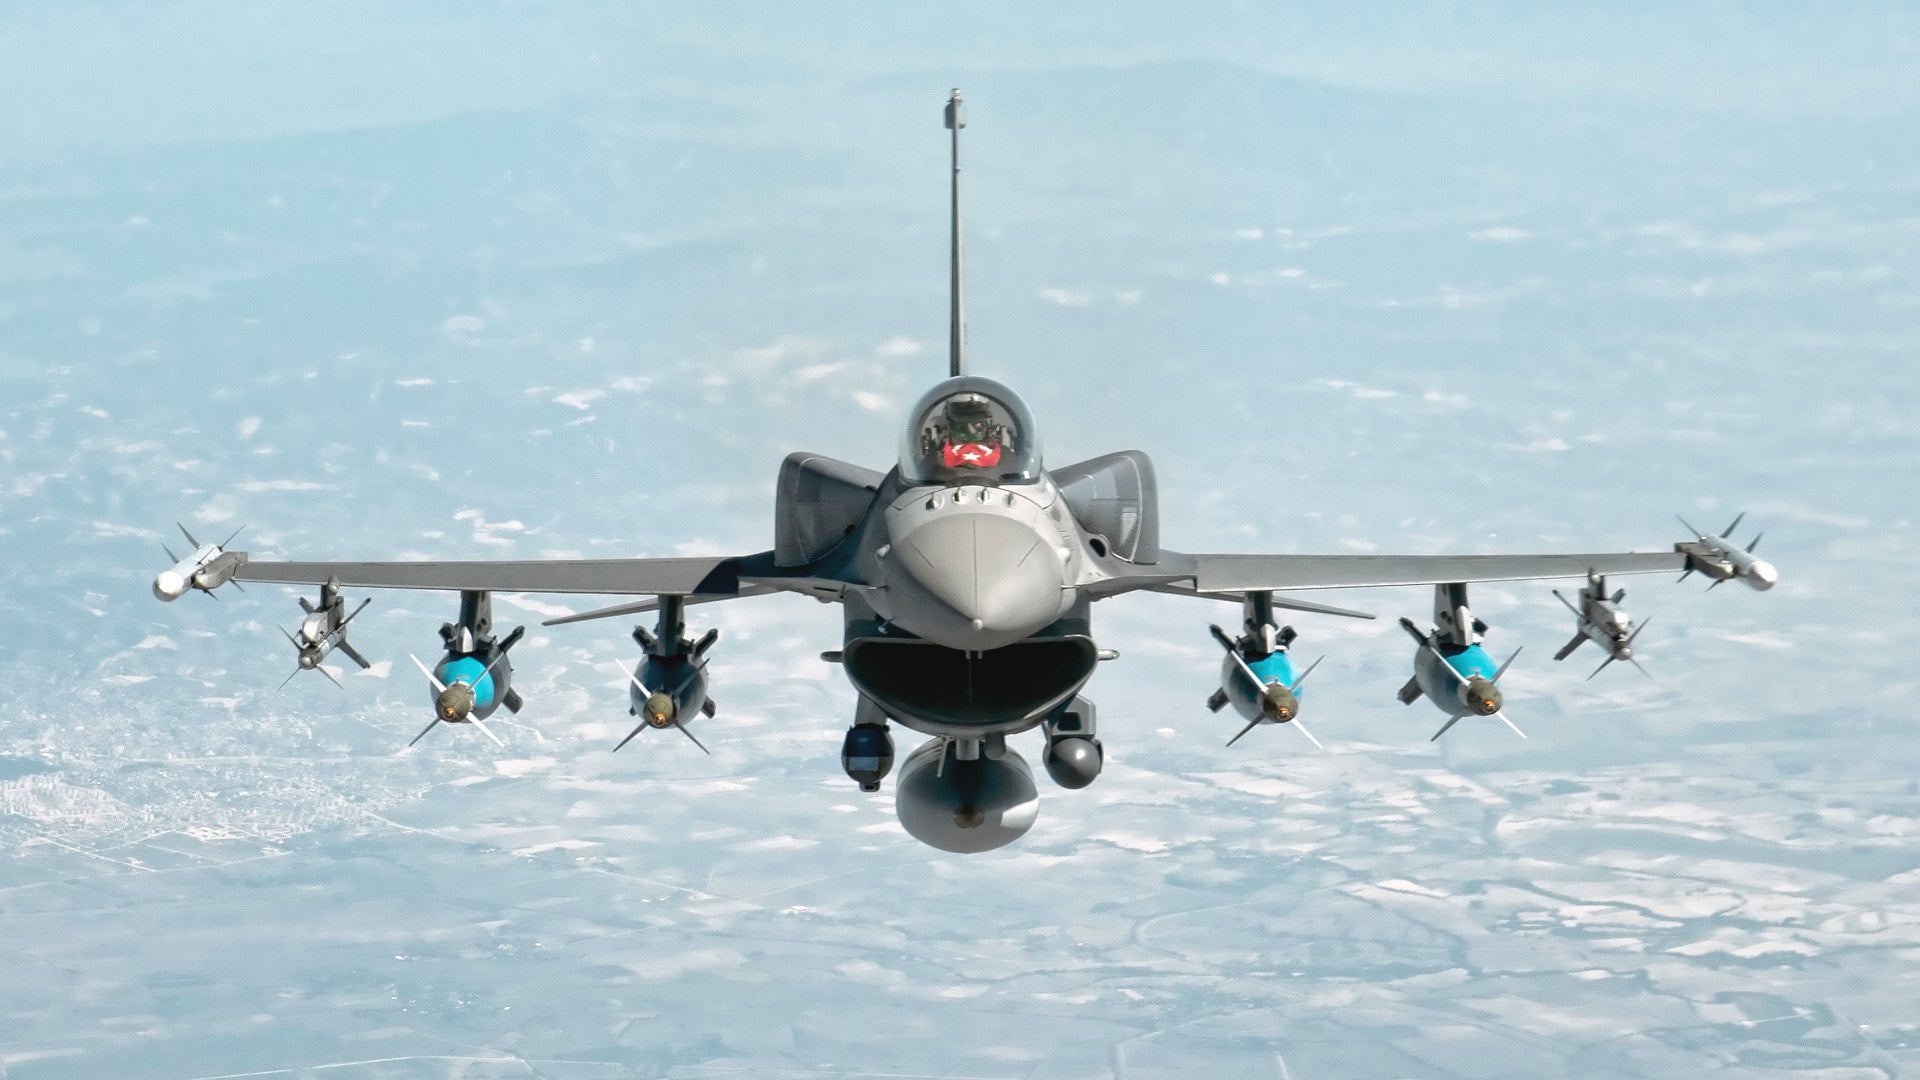 Η Τουρκία διαπραγματεύεται τη σύμβαση F-16 με τις ΗΠΑ, λέει ο υπουργός Άμυνας Ακάρ